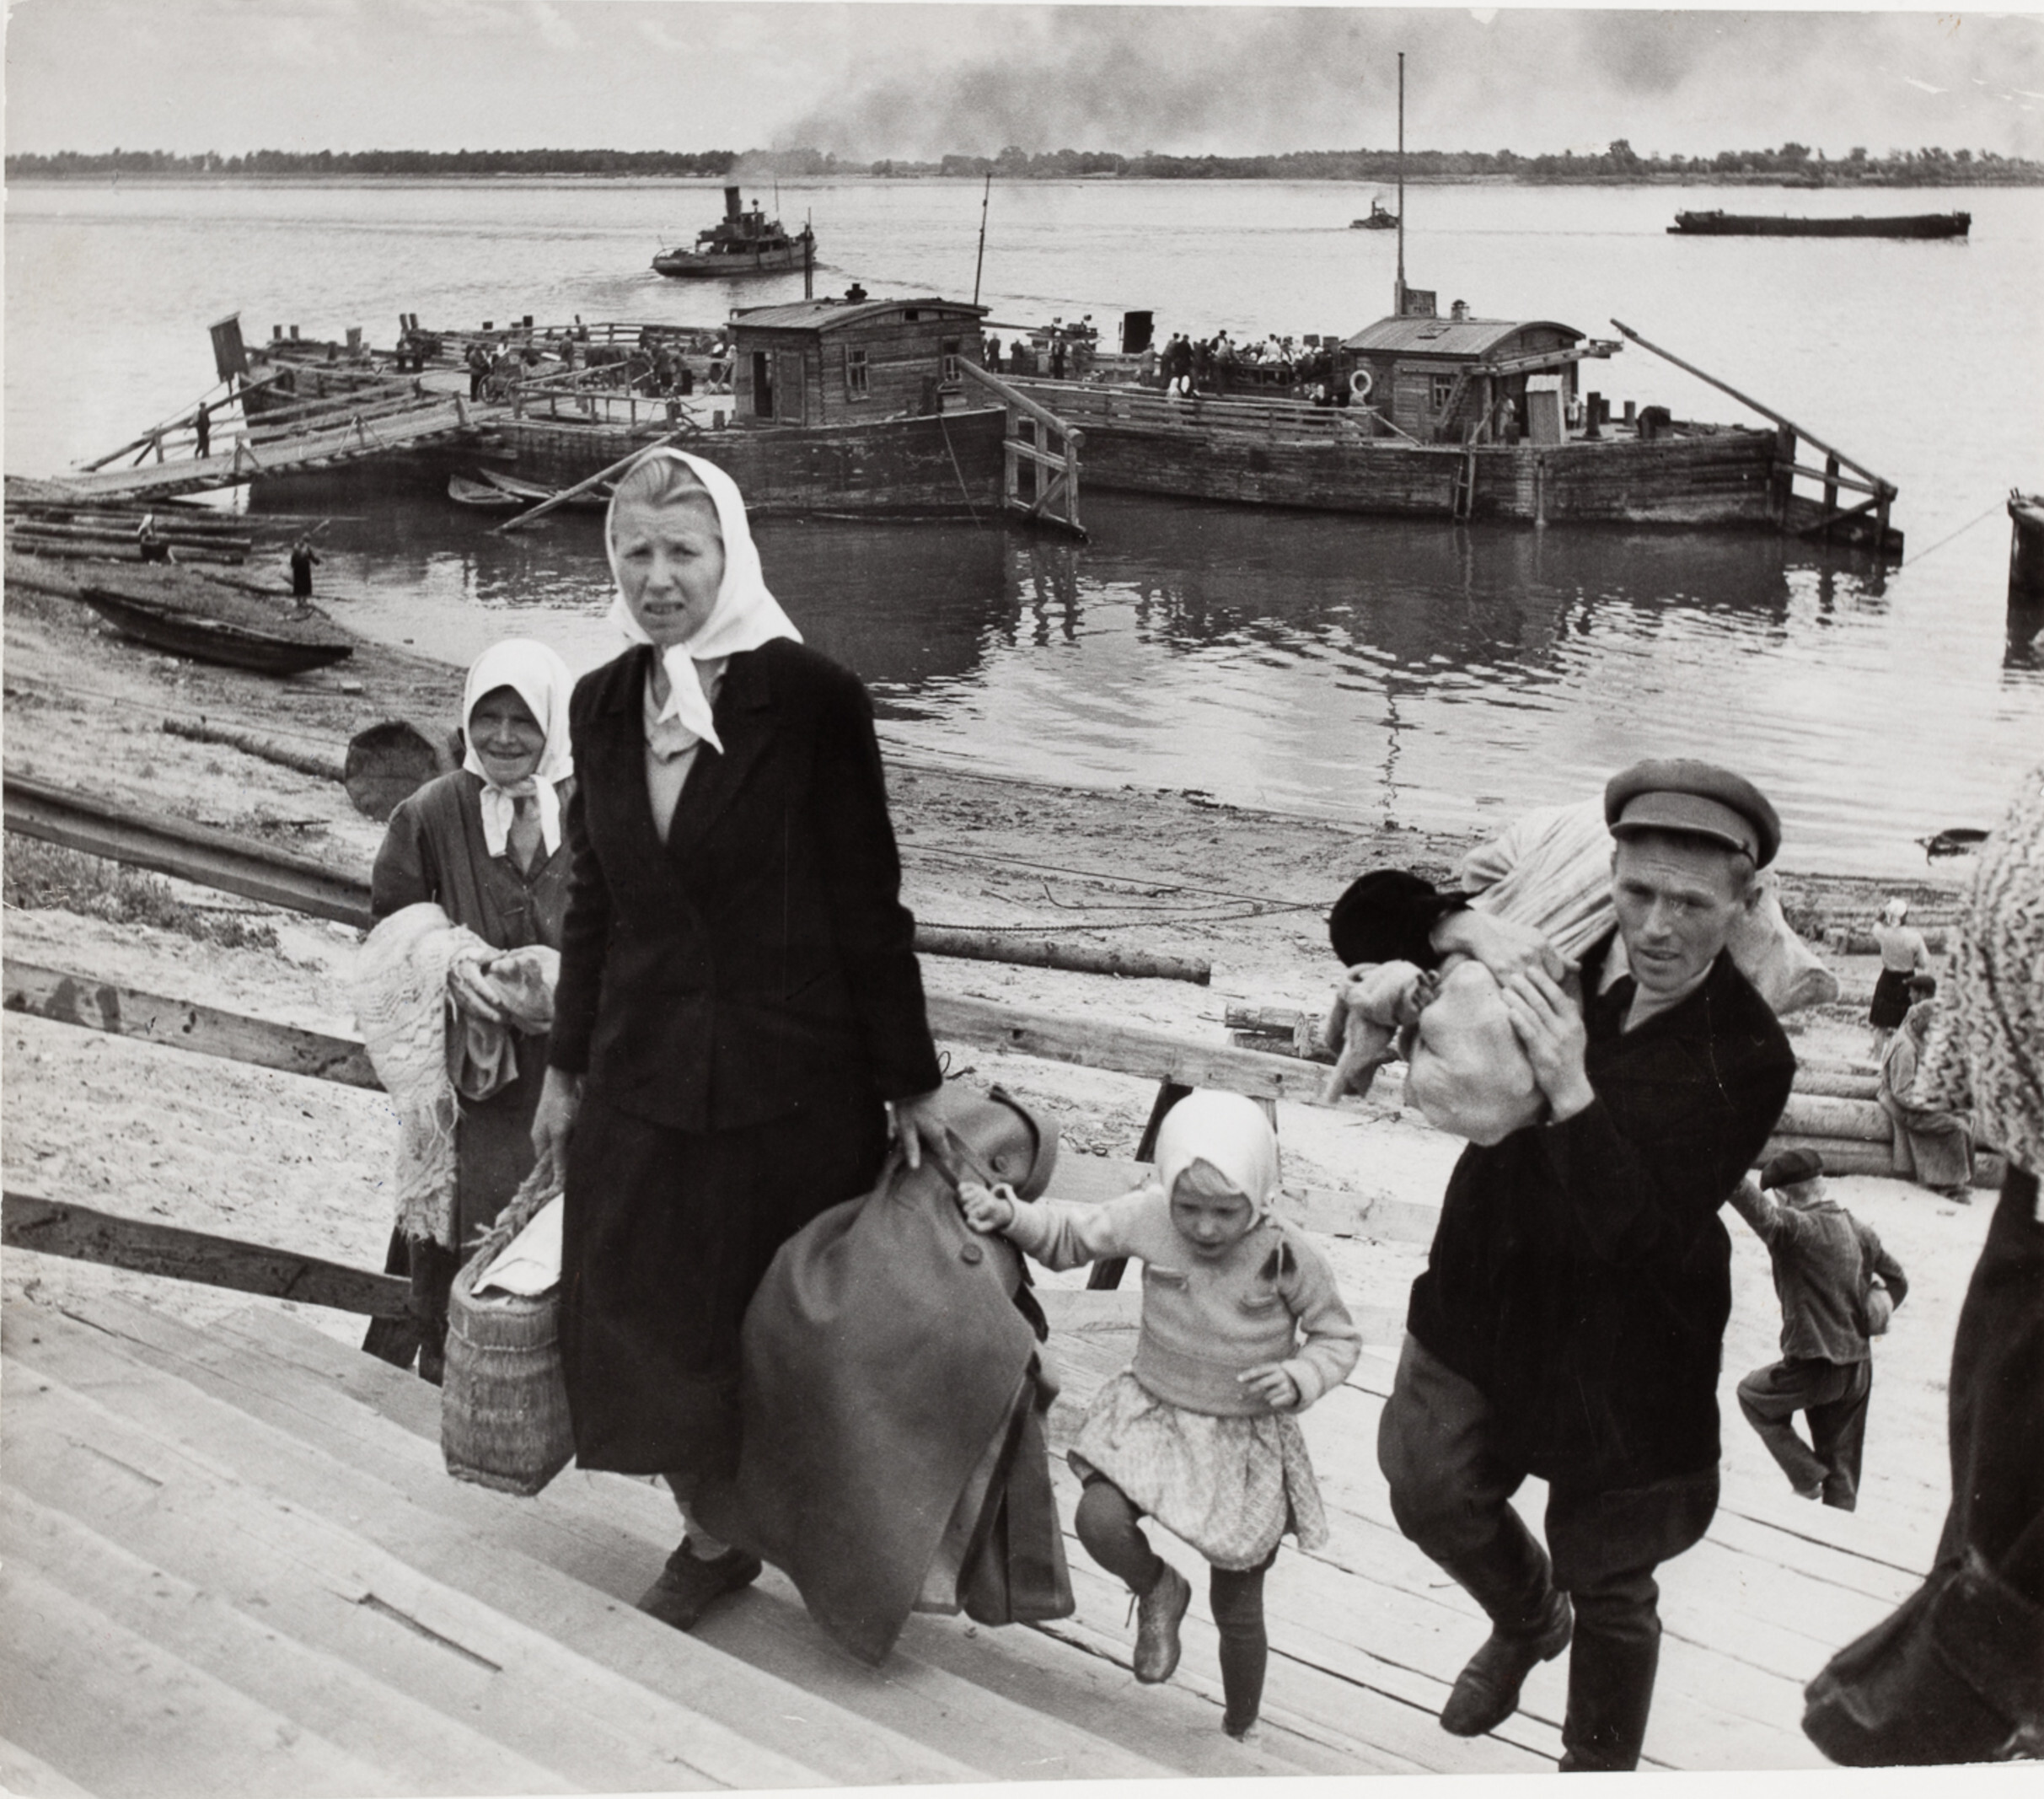 Семья прибывает на лодке в Сталинград, СССР, 1947 год. Фотограф Роберт Капа